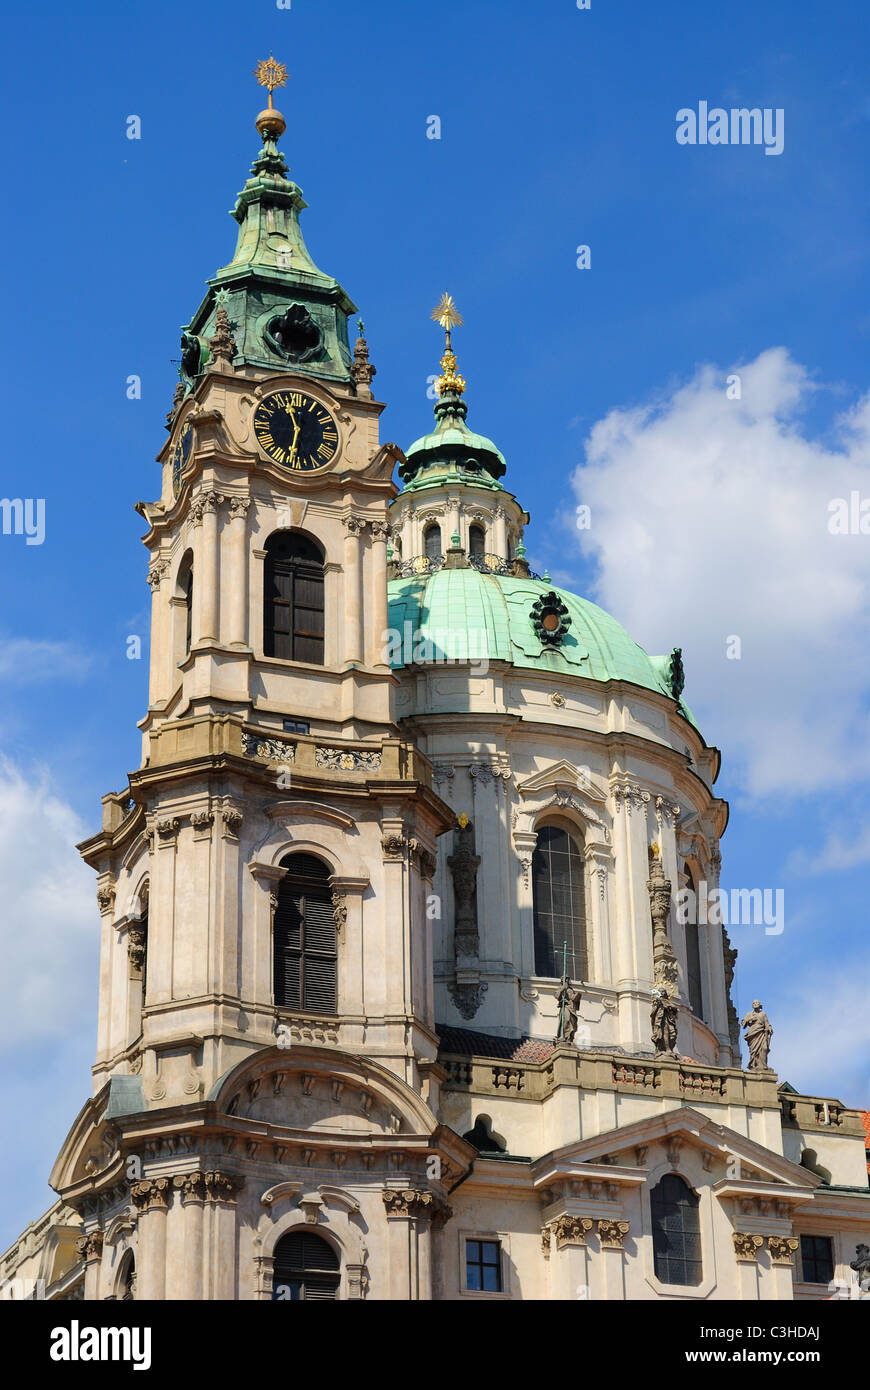 Turm und Uhr Turm der St. Nikolaus-Kathedrale in Prag, Tschechien. Stockfoto